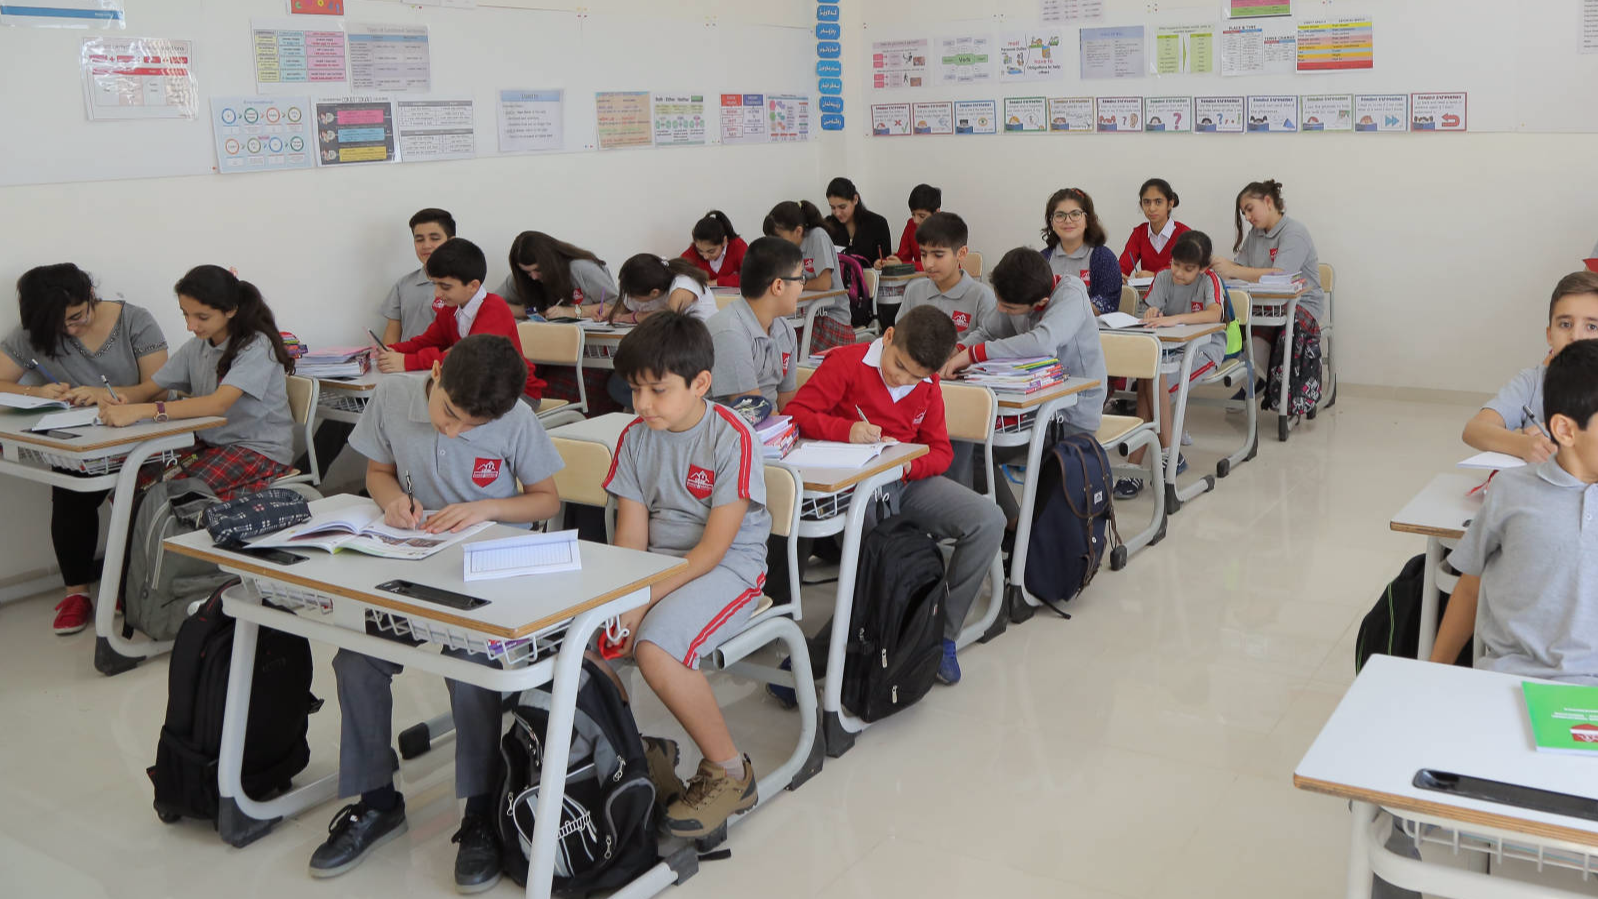 إتحاد معلمي كوردستان "قلق" من أمرين احدهما نظام التعليم اللالكتروني 